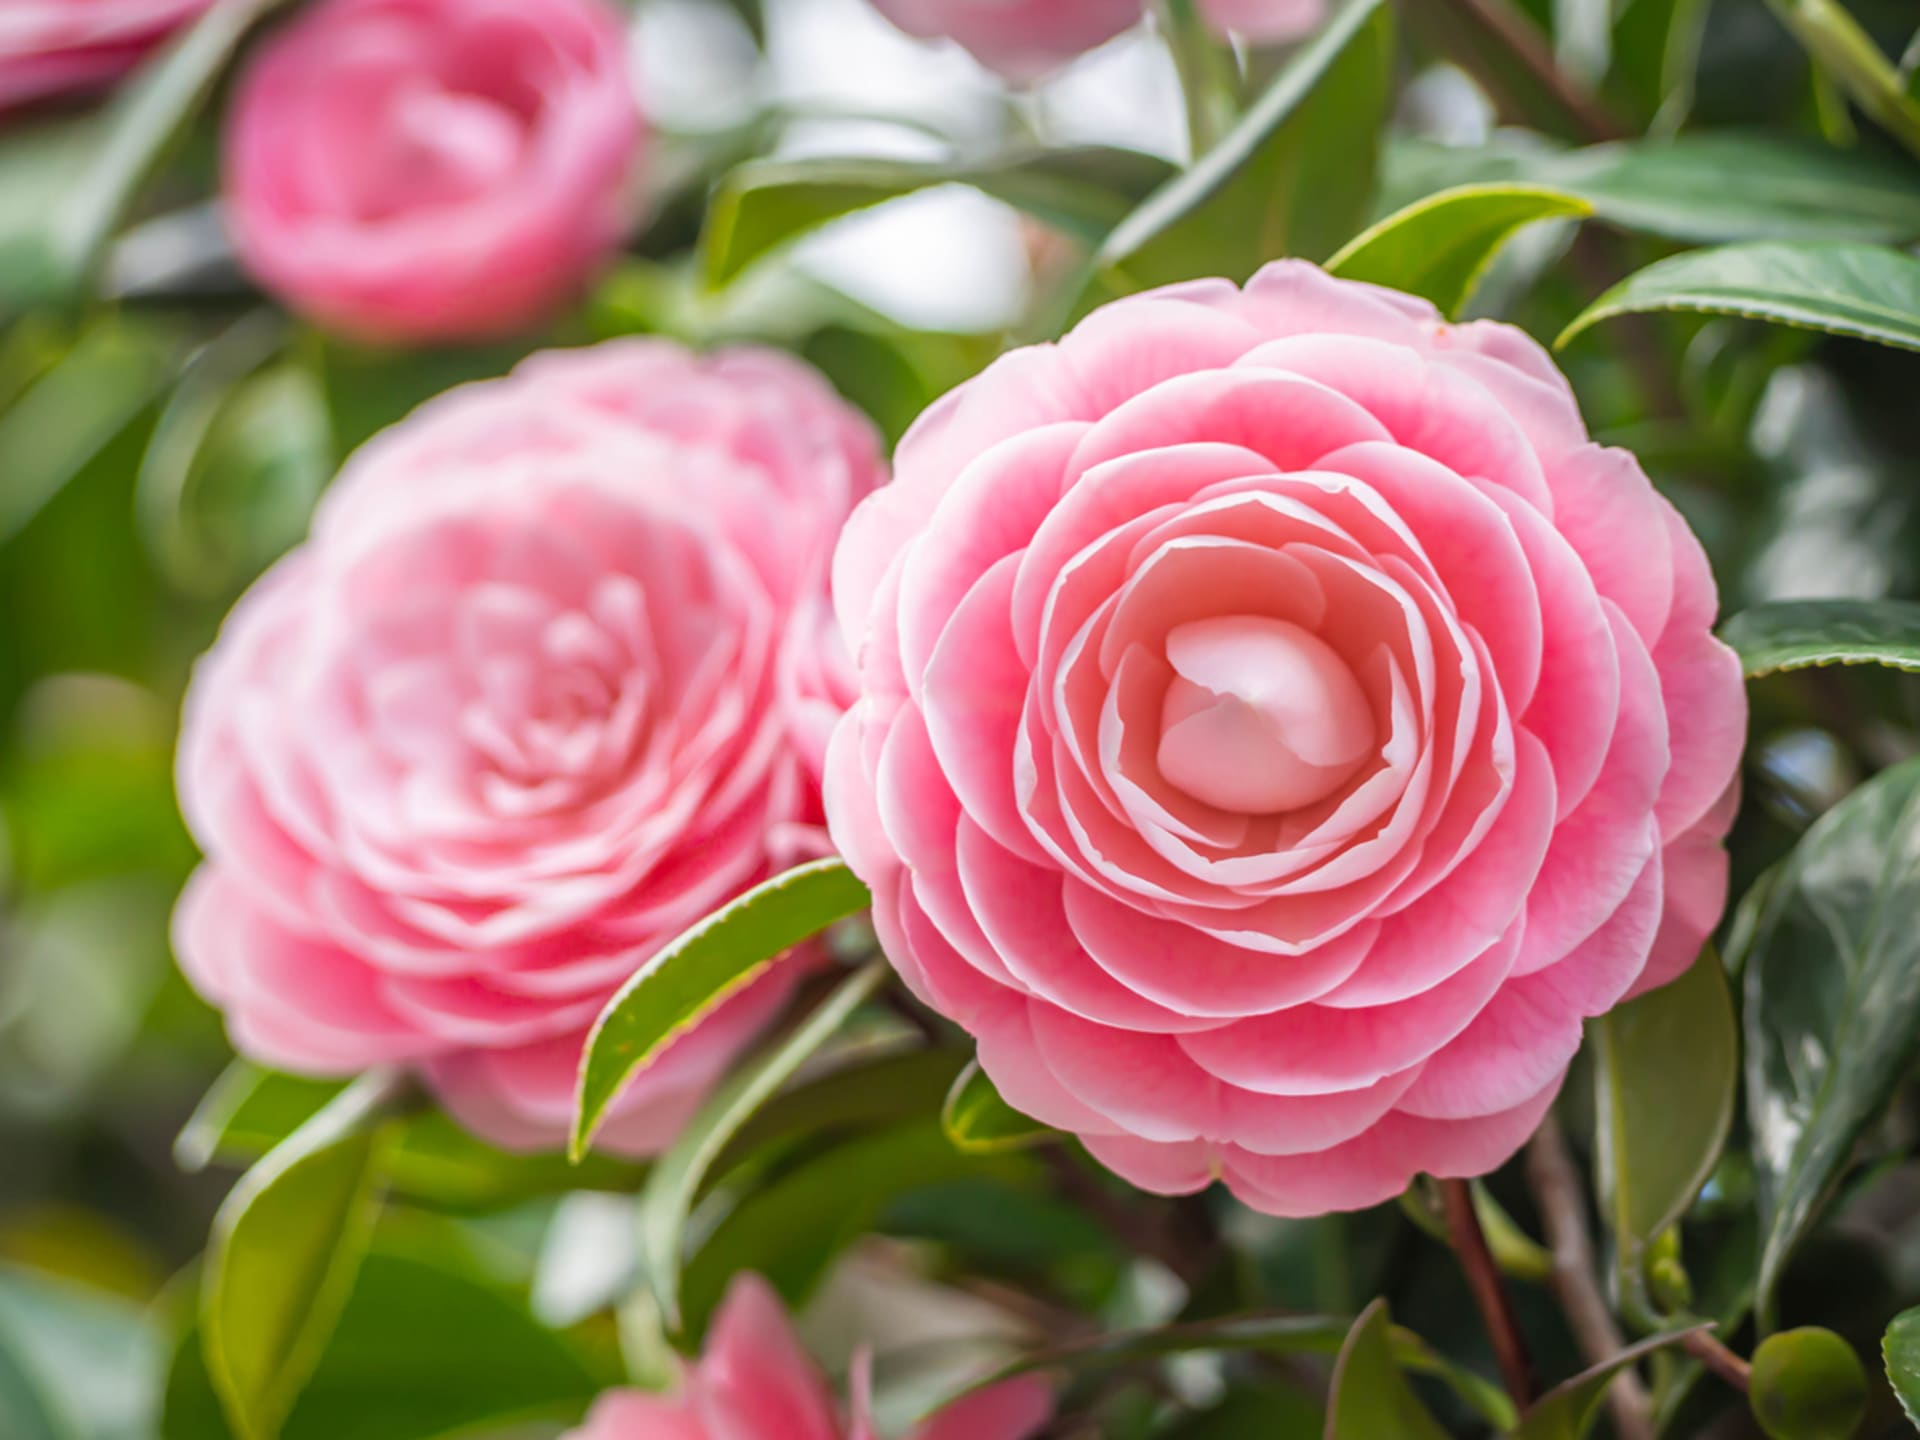 Kamélie (Camellia japonica) jsou trochu choulostivé a rozmarné krásky, ale jejich nádherné květy stojí za trochu námahy při jejich pěstování. 